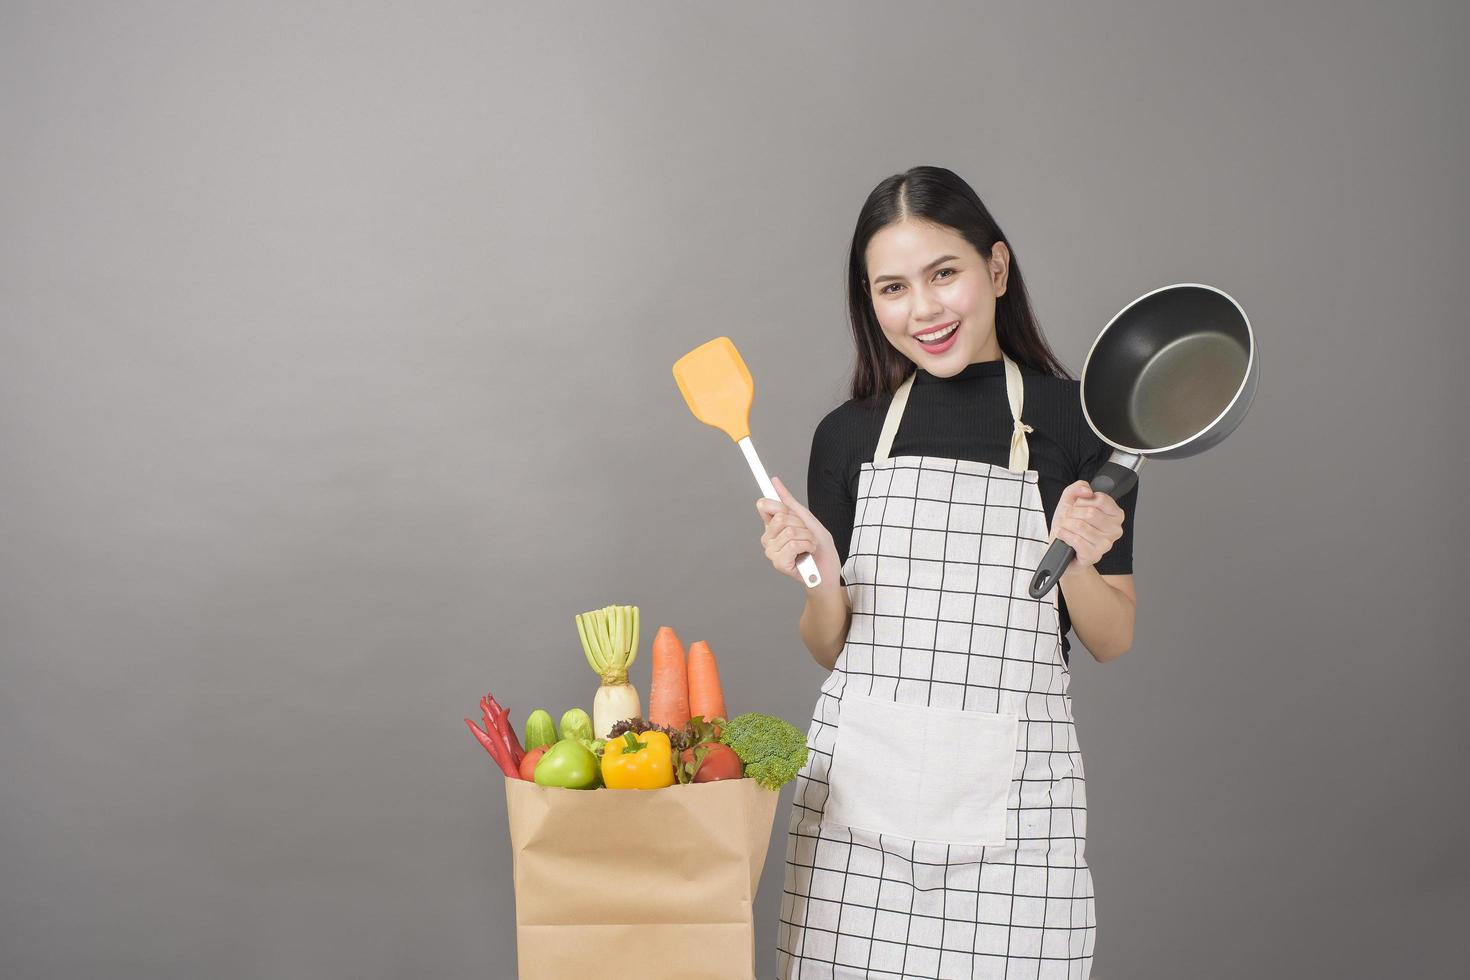 une femme heureuse prépare des aliments sains pour cuisiner photo